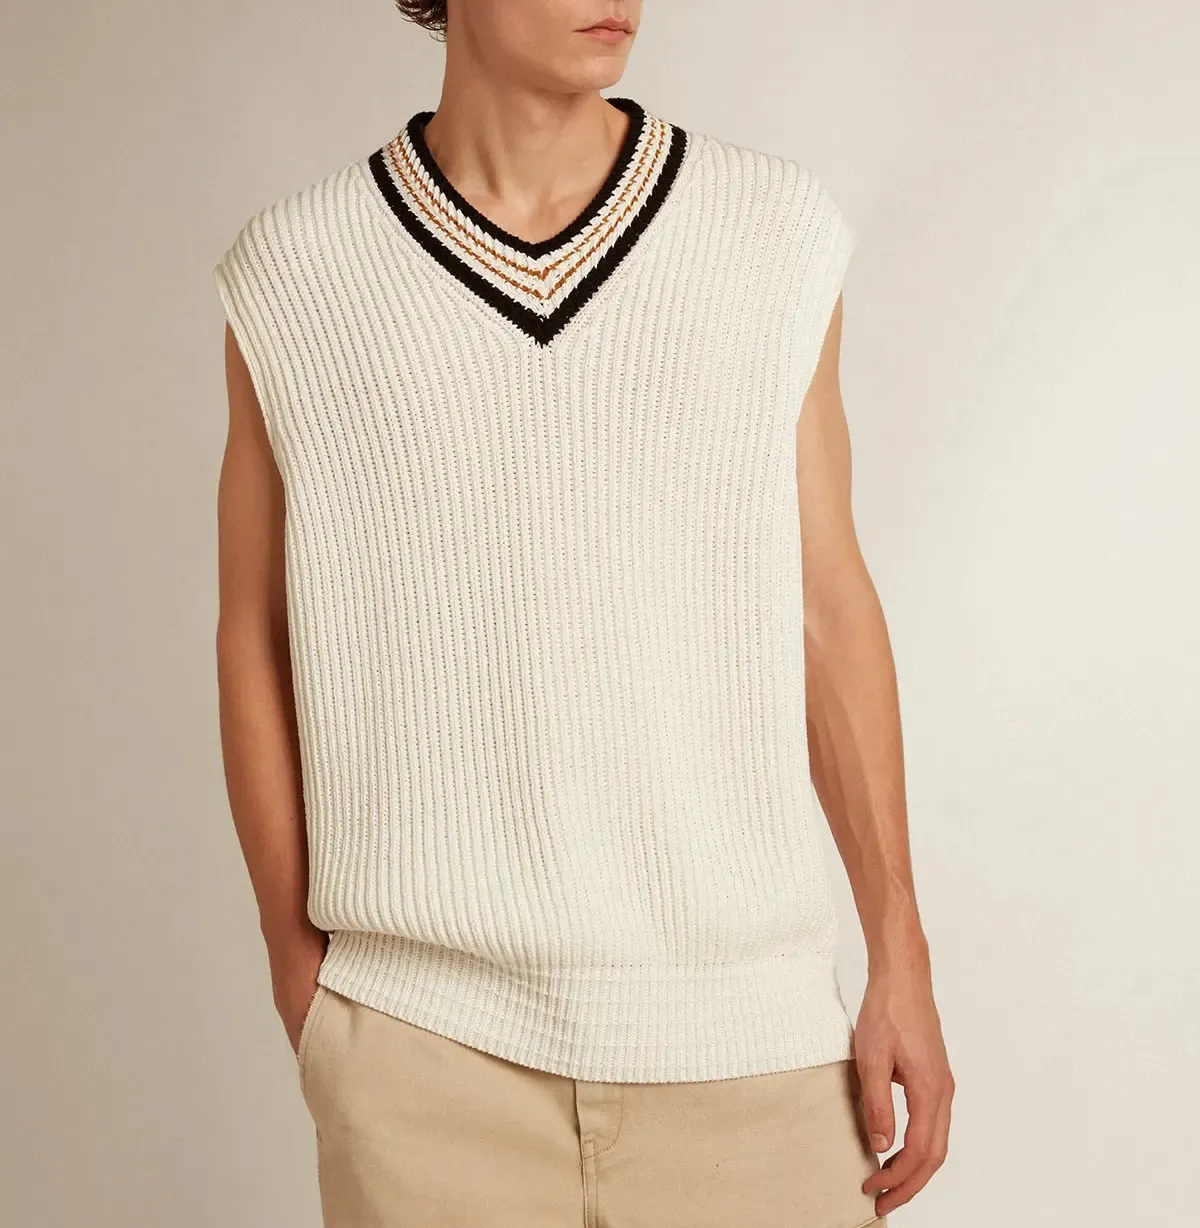 Personnalisé décontracté mode tricoté lâche gilet couleur unie coton hommes tricot sans manches col en v gilet pull tricots pour hommes